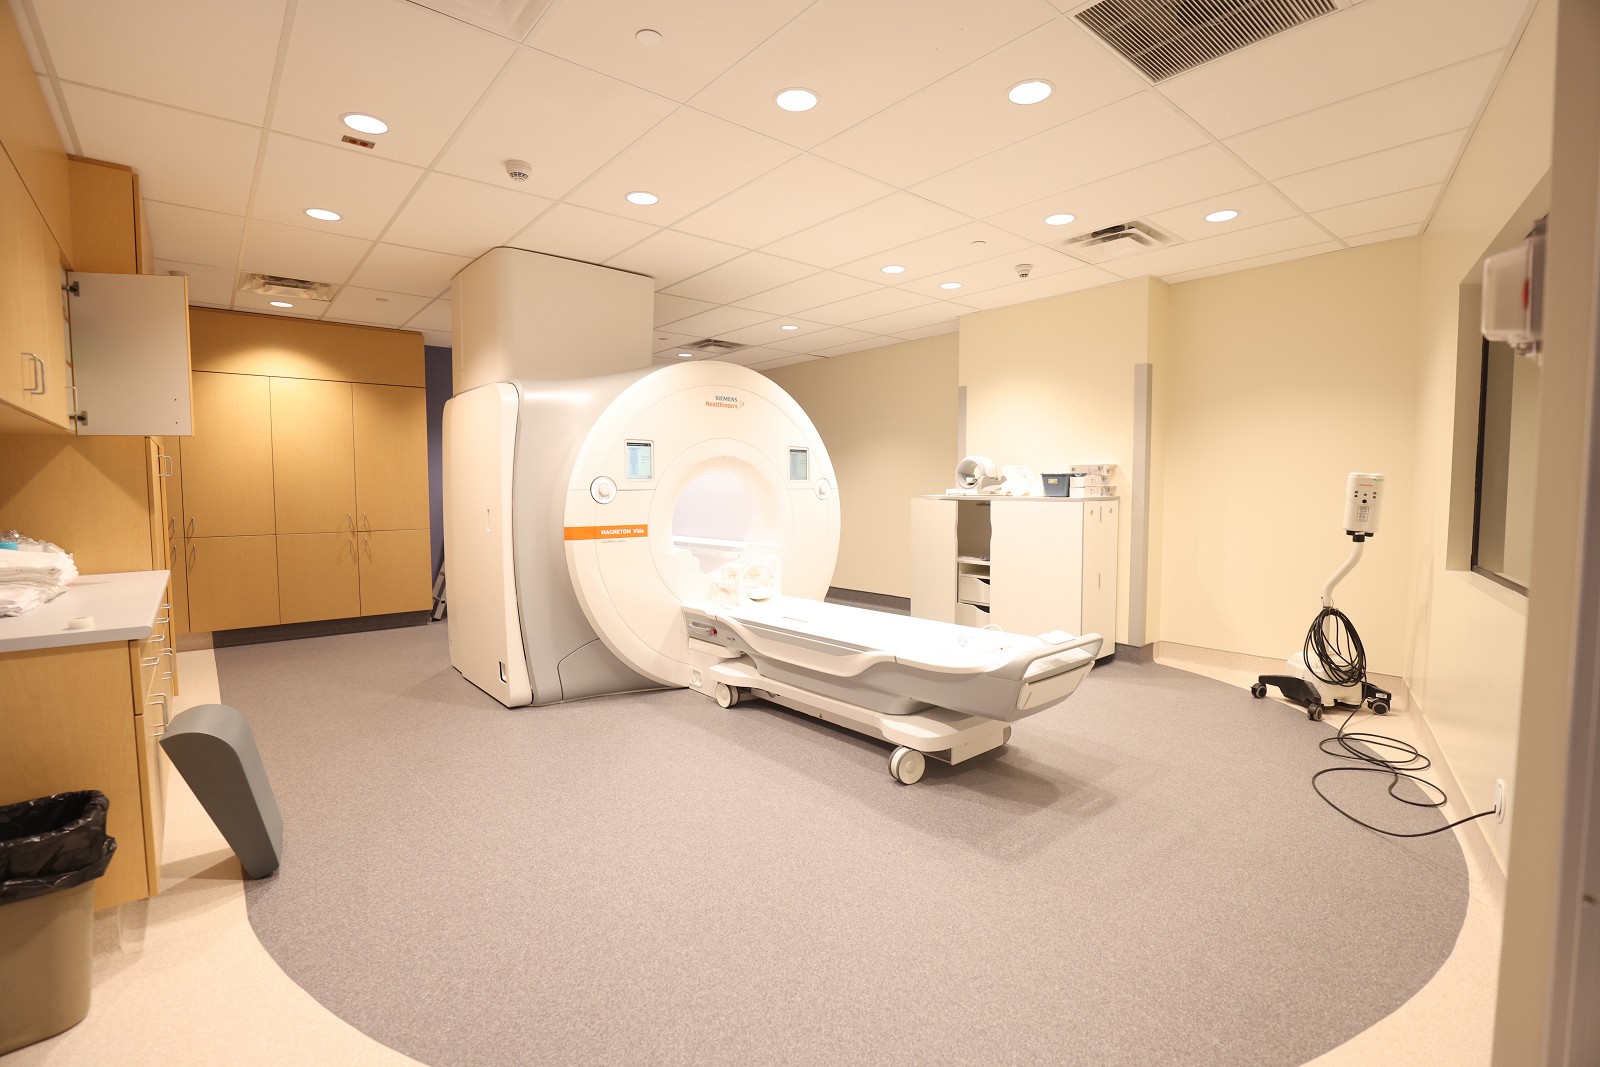 Sept 24 - New 3T MRI 